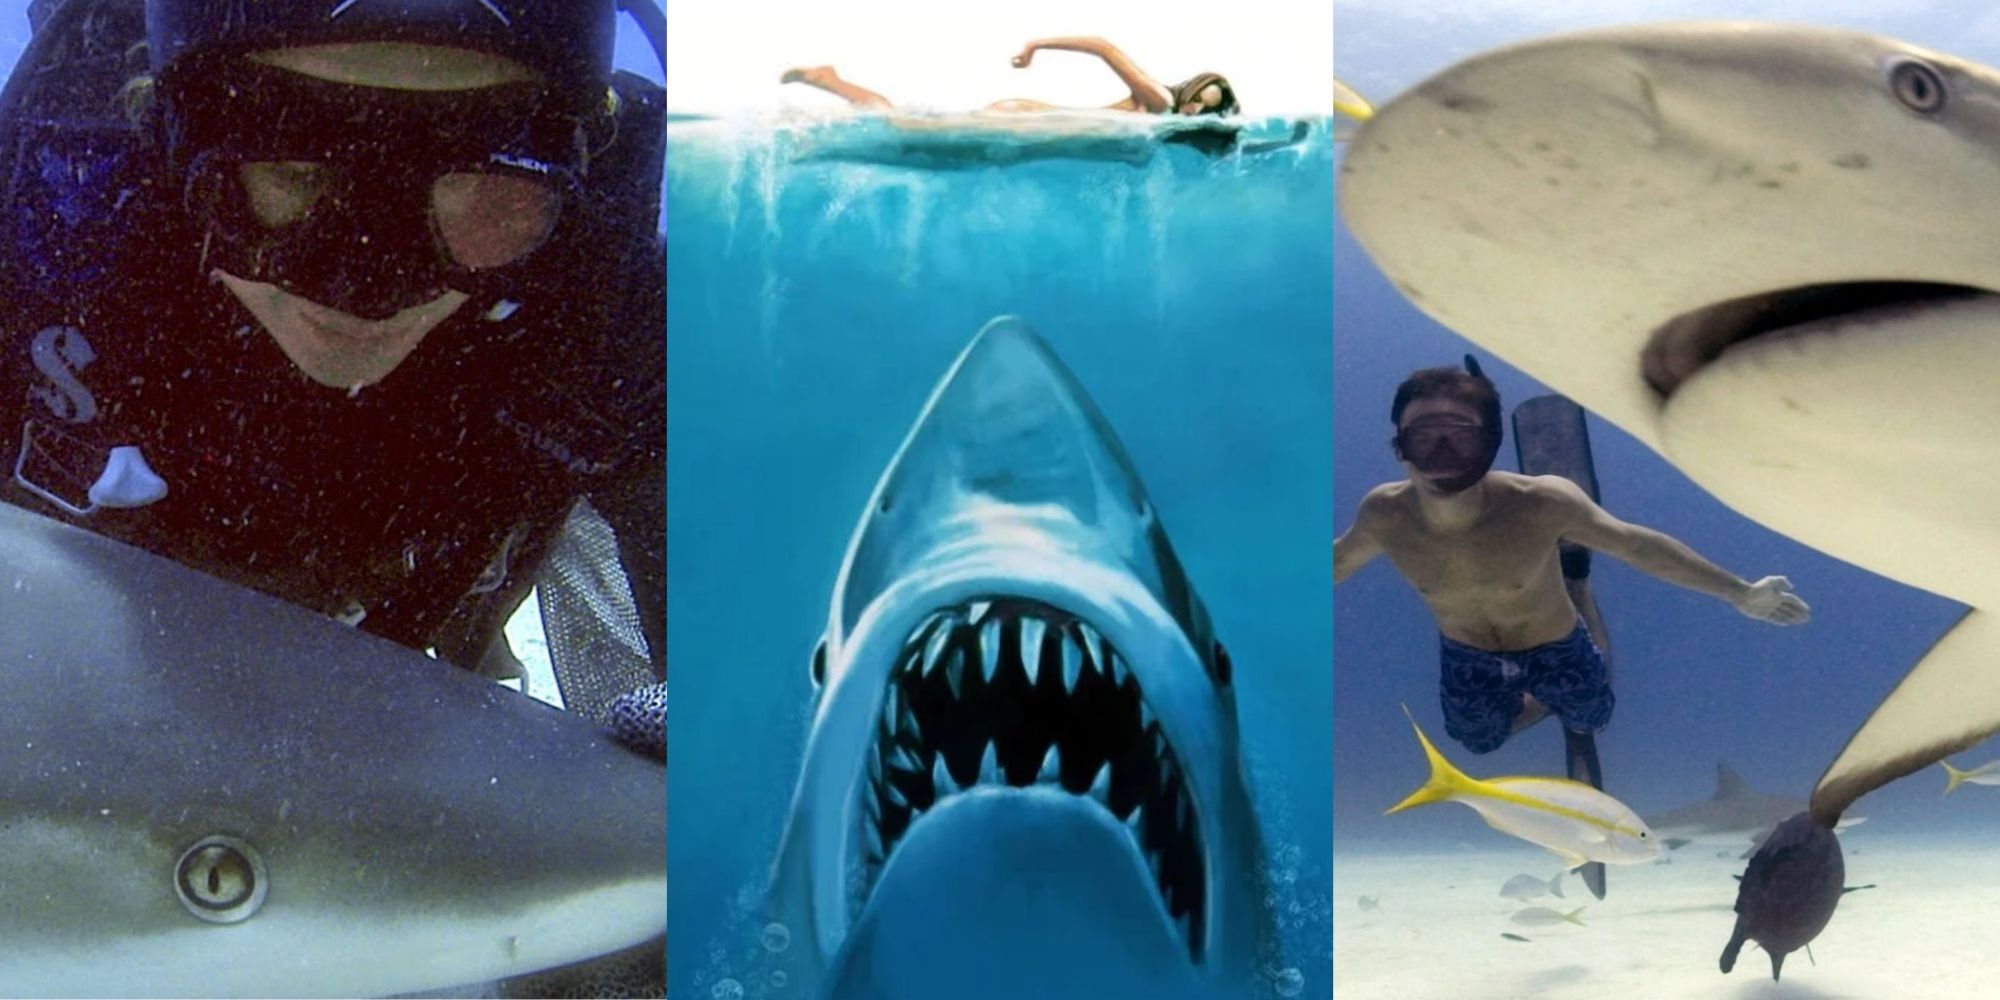 заглавное изображение что челюсти ошибаются примыкают к акулам Shark Girl (2014) Челюсти постер фильма Sharkwater (2006)